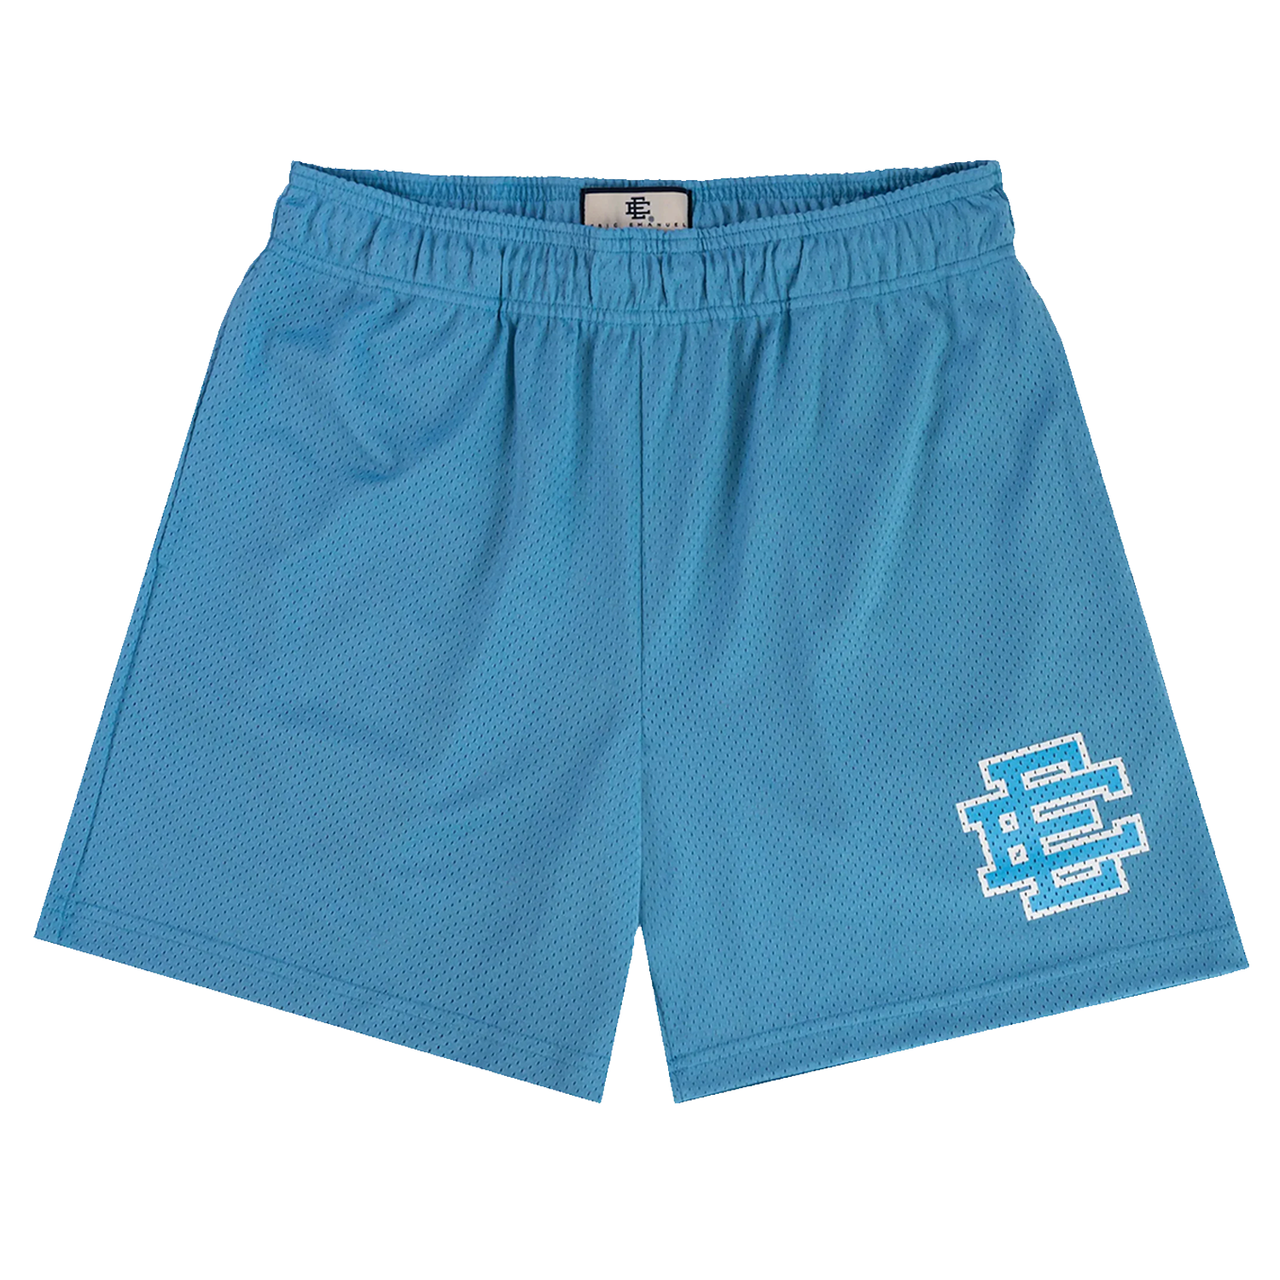 Eric Emanuel Basic Shorts Carolina Blue